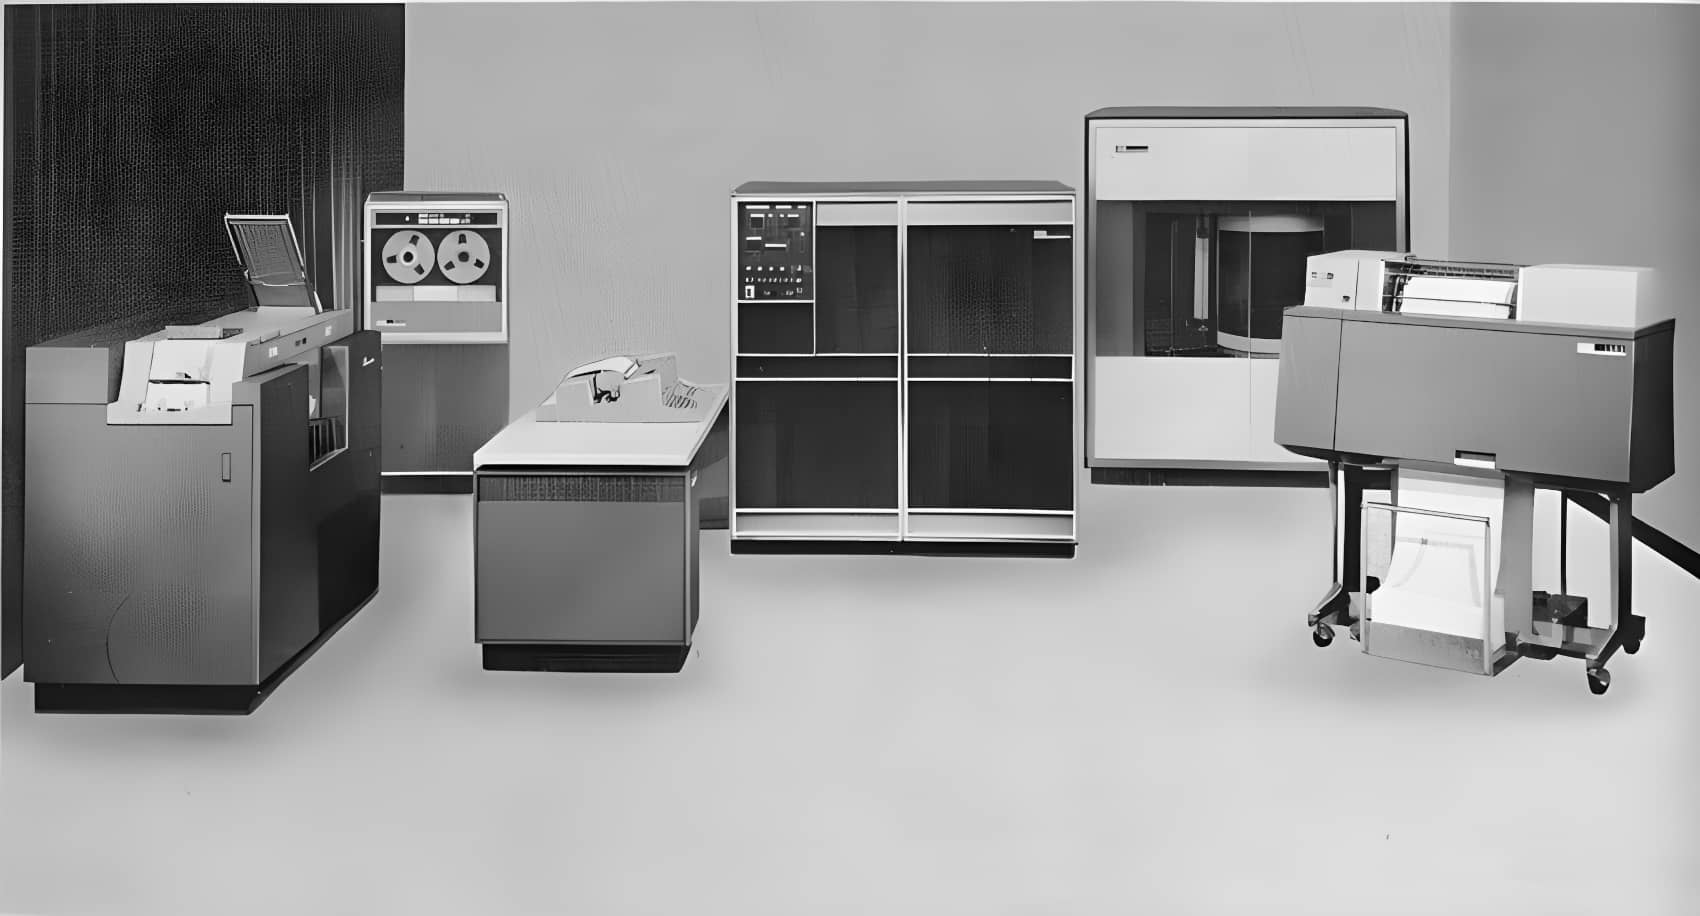 IBM 1401 ЭВМ